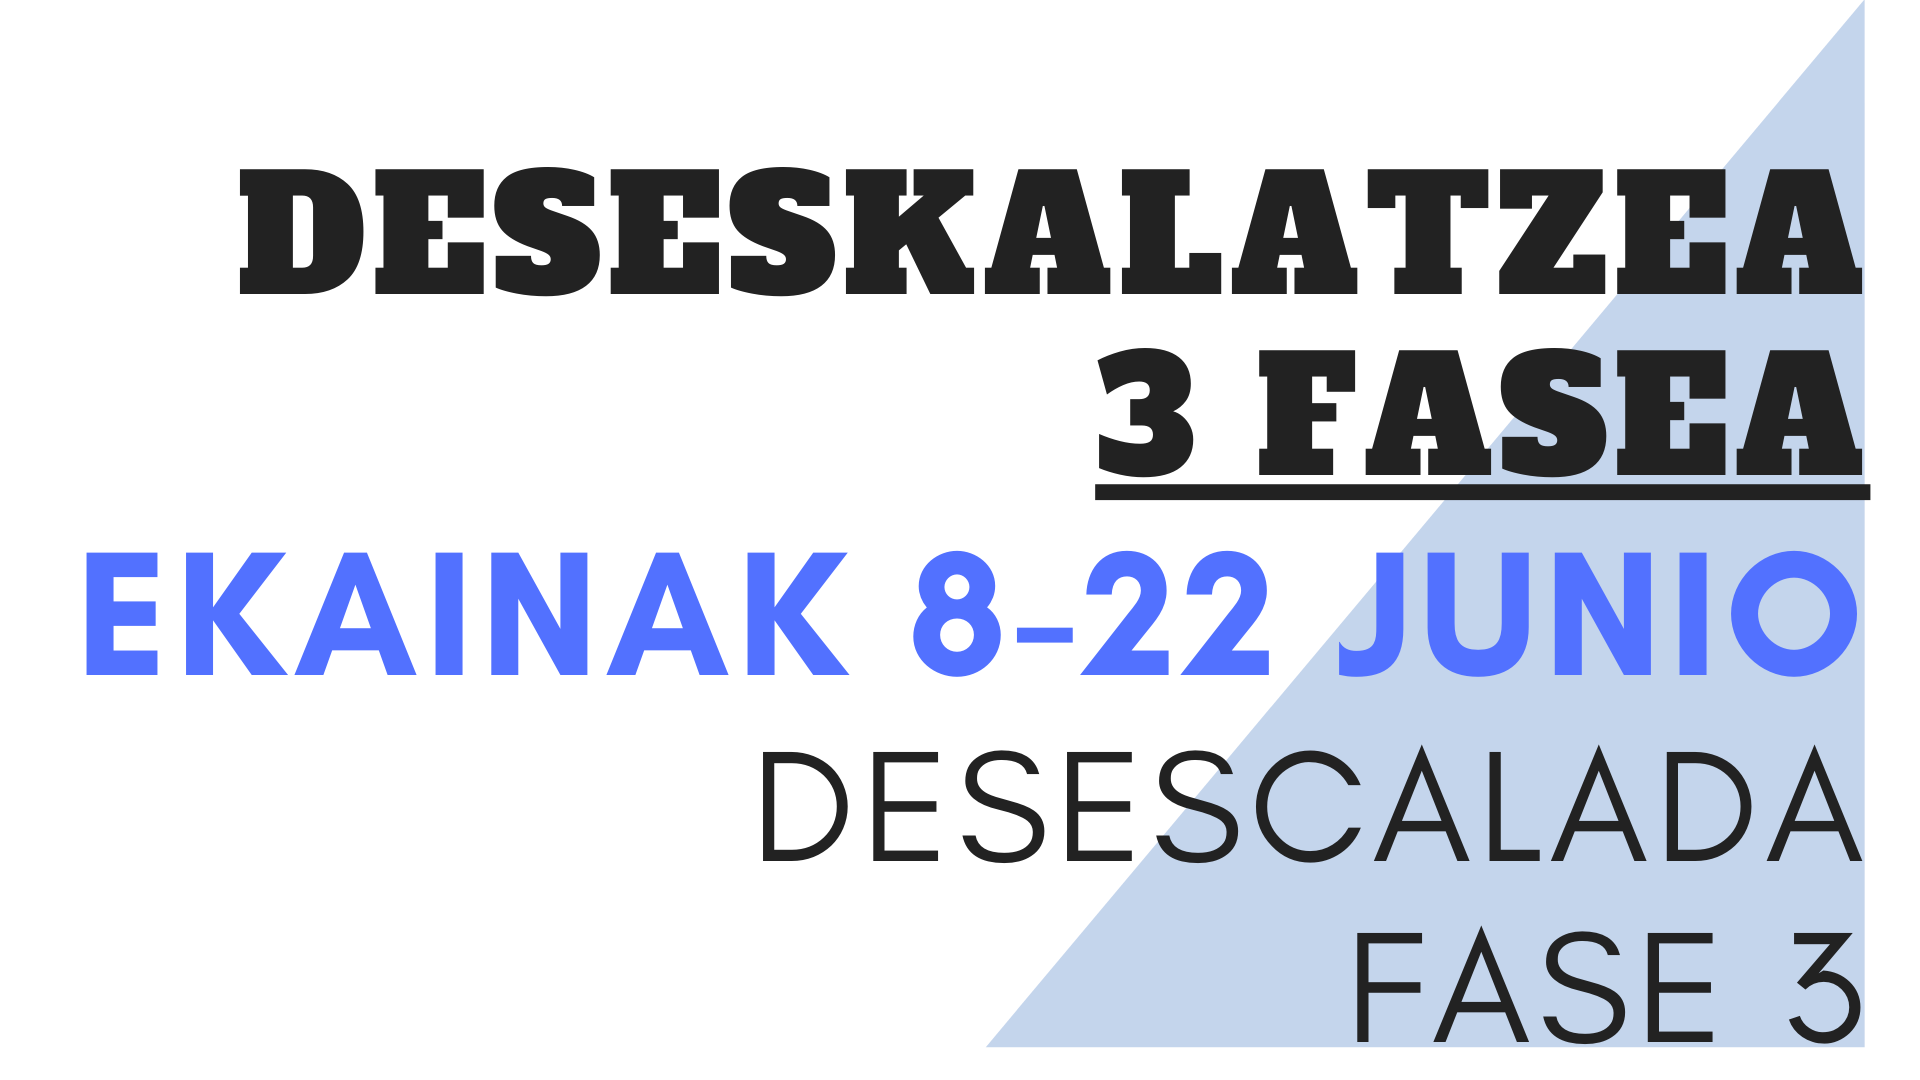 DESESKALATZEA 2 FASEA EKAINAK 8 junio DESESCALADA FASE 2